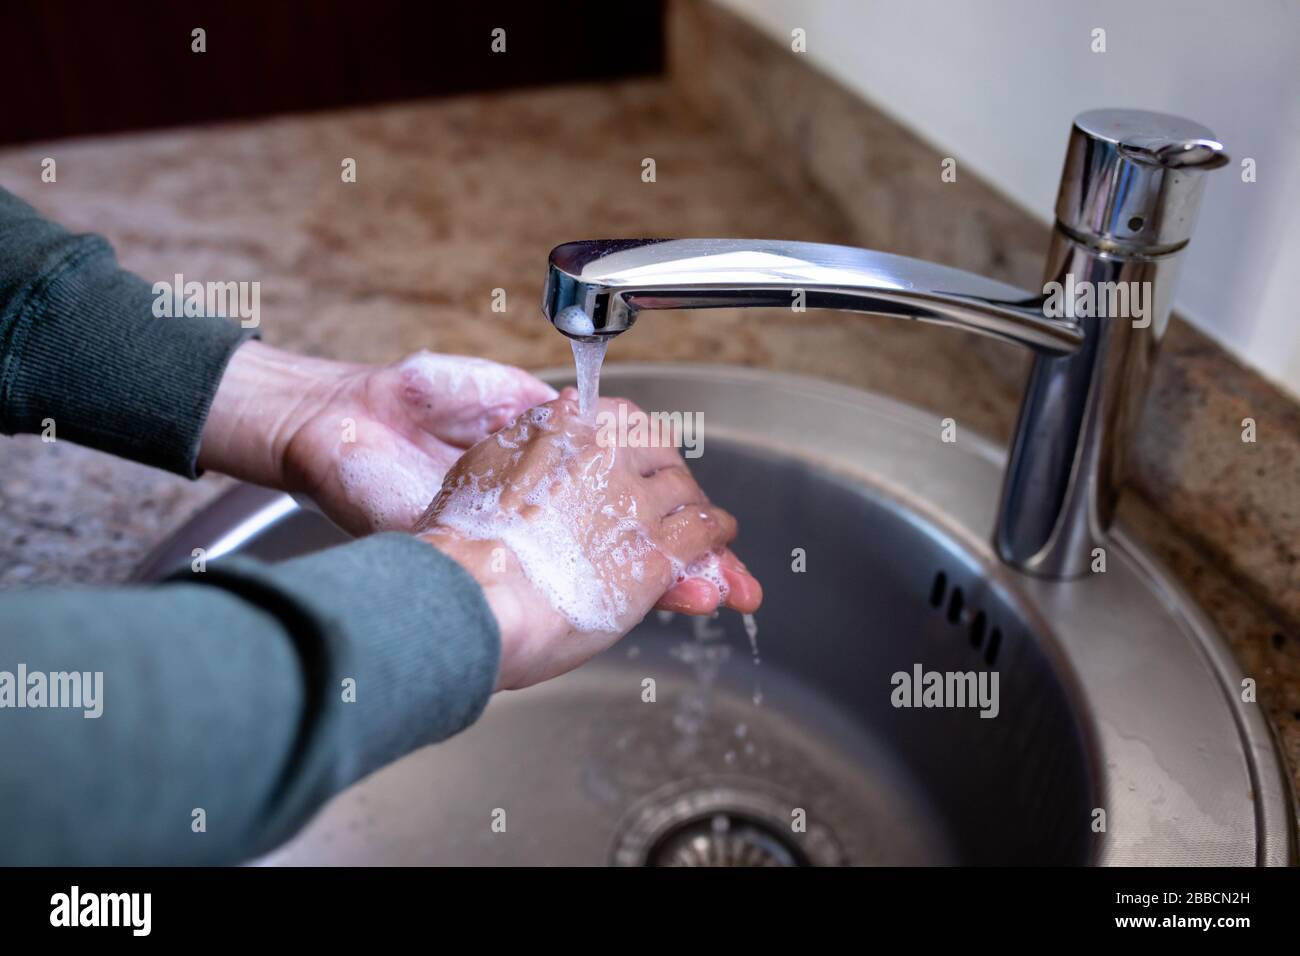 Woman washing her hands against Coronavirus Covid19 Stock Photo